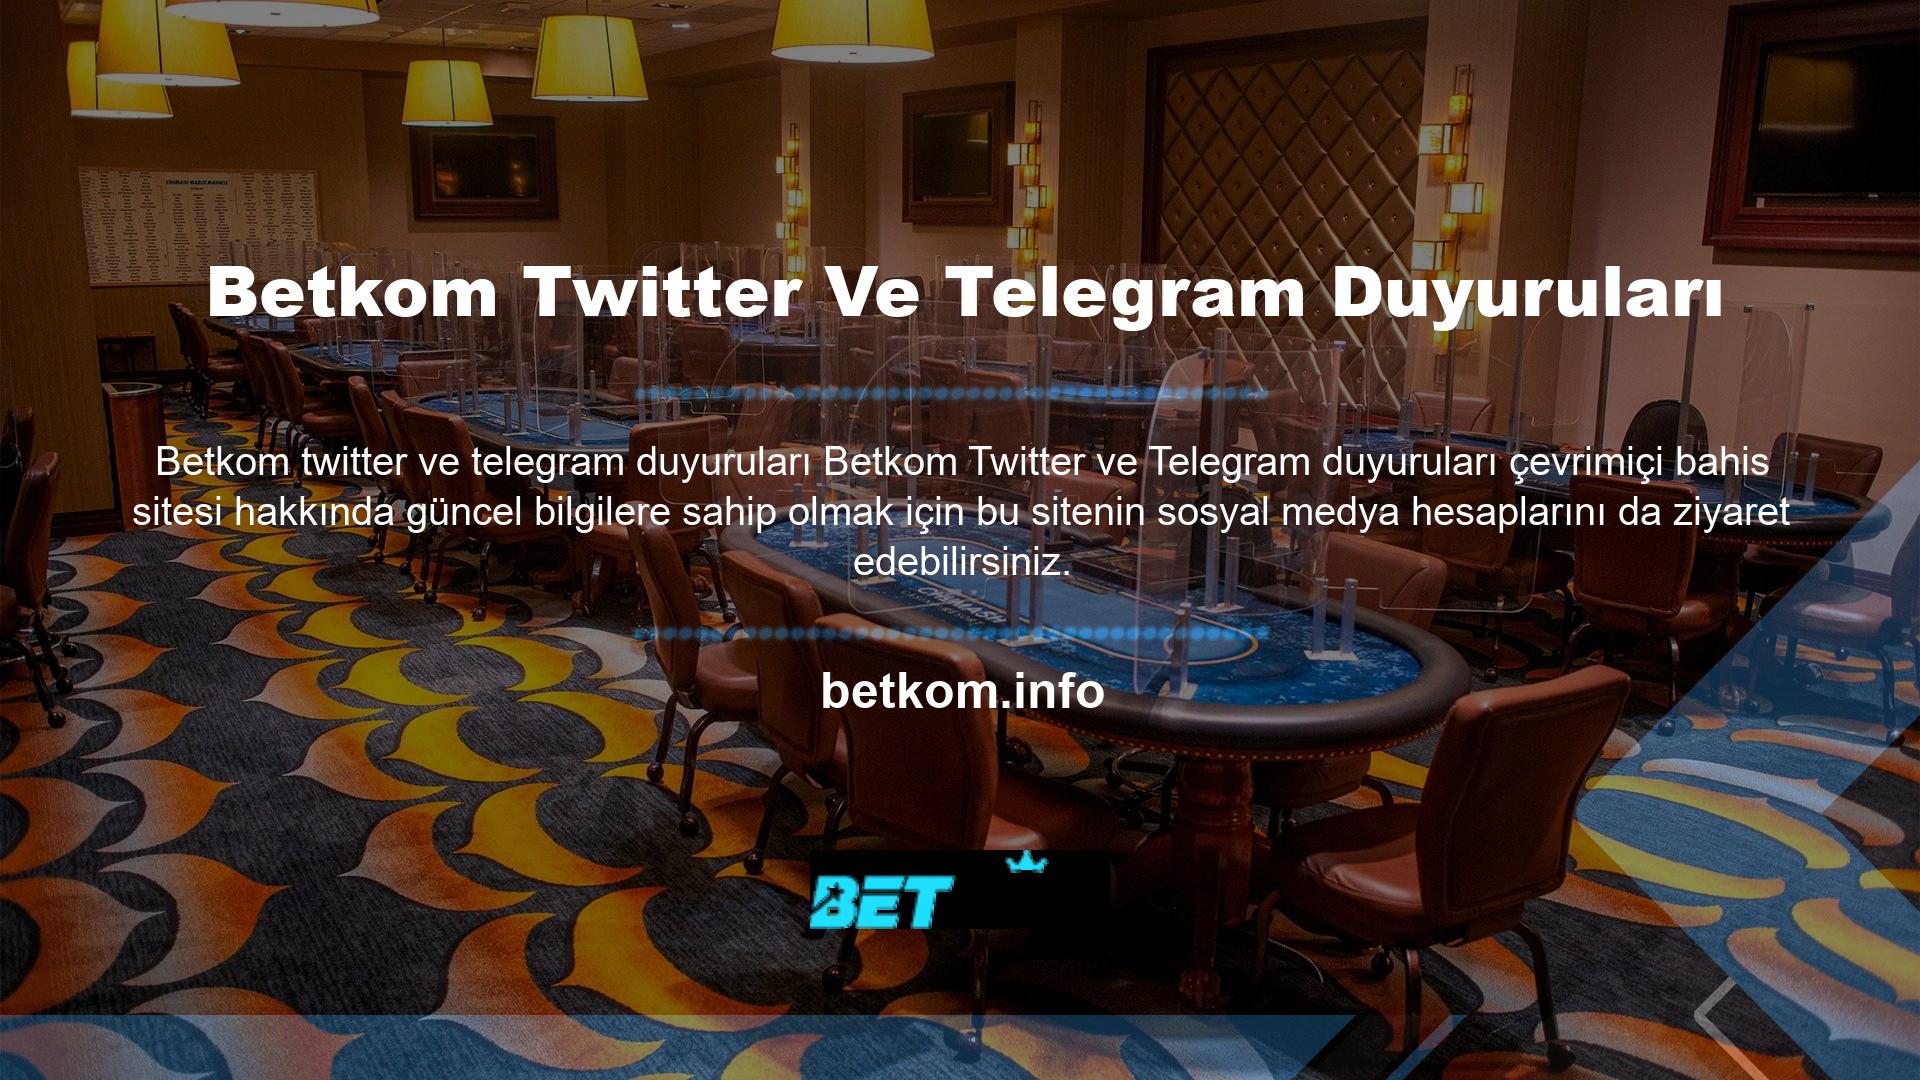 Bahis sitesi yöneticisi Twitter ve Telegram hesaplarını aktif olarak kullanmaktadır